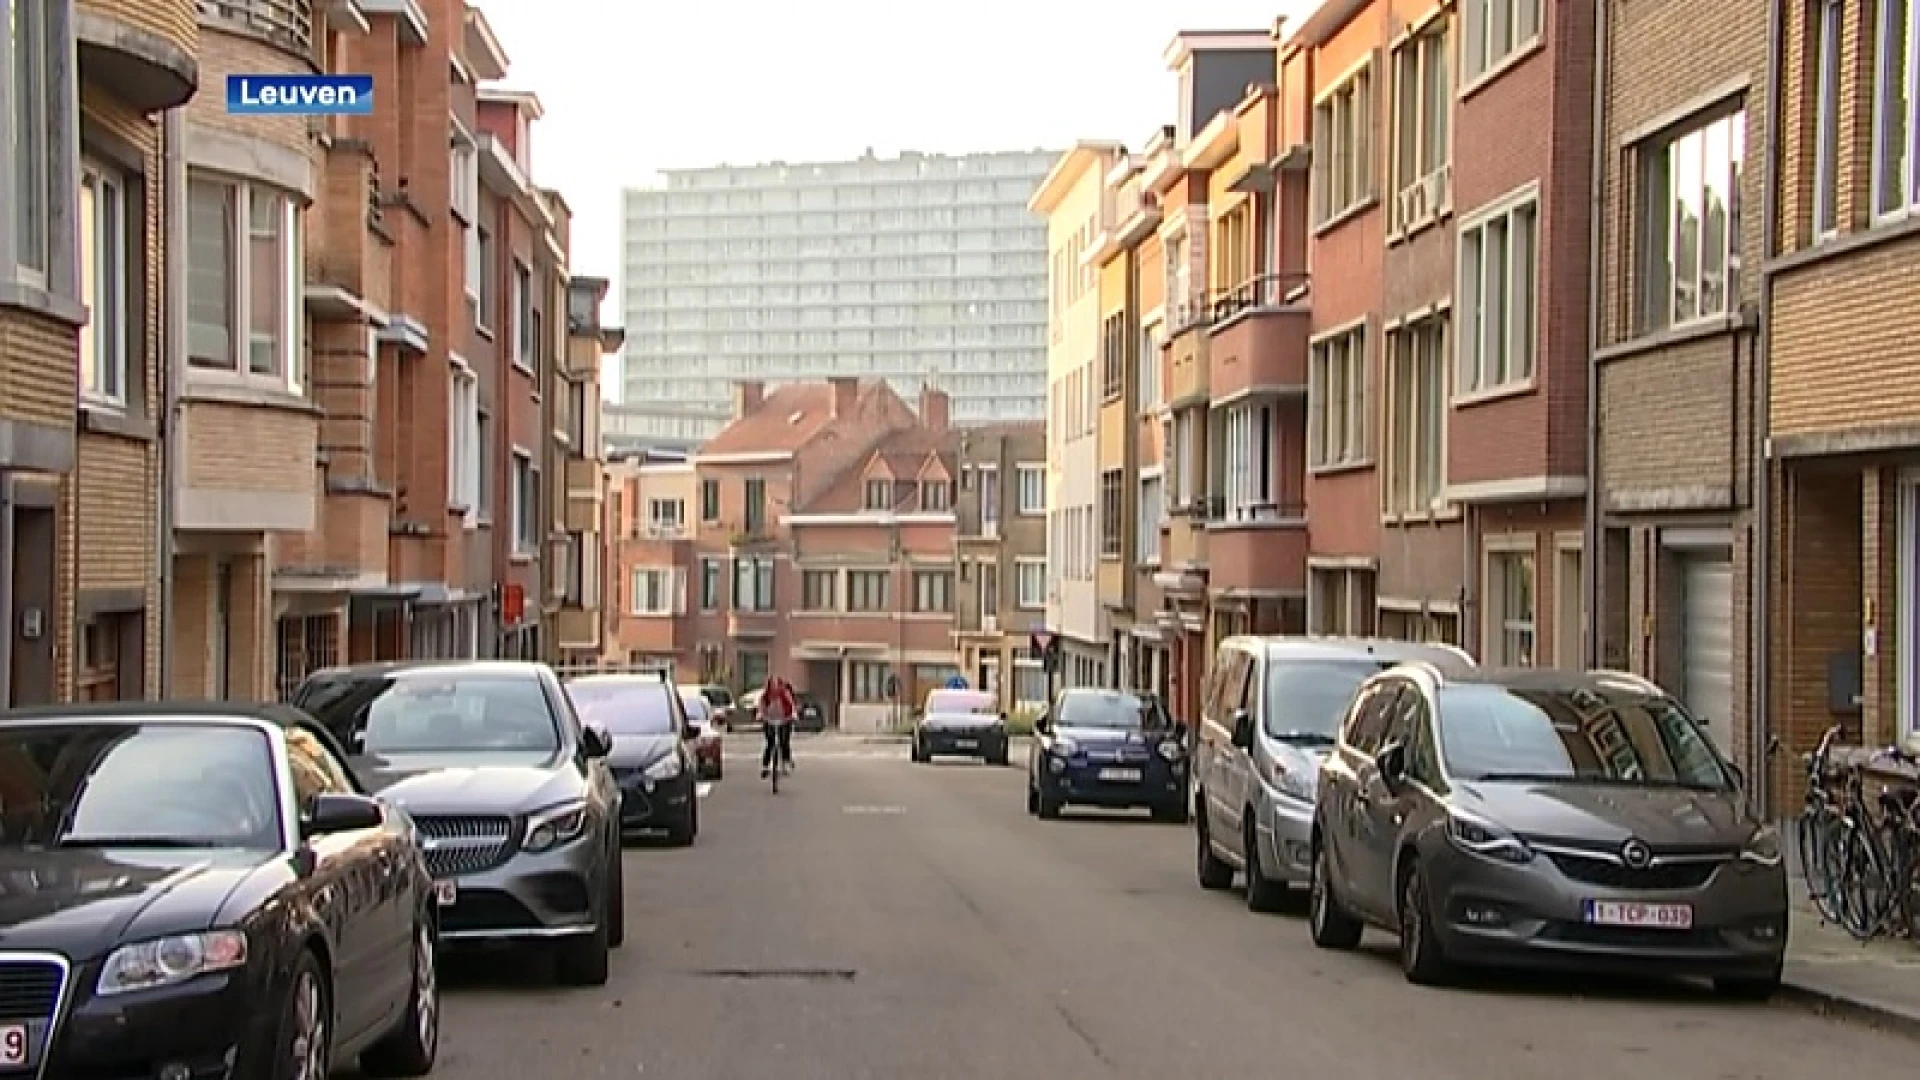 Woningprijzen in Leuven stijgen fors, oppositiepartij N-VA vraagt nogmaals om lagere belastingen